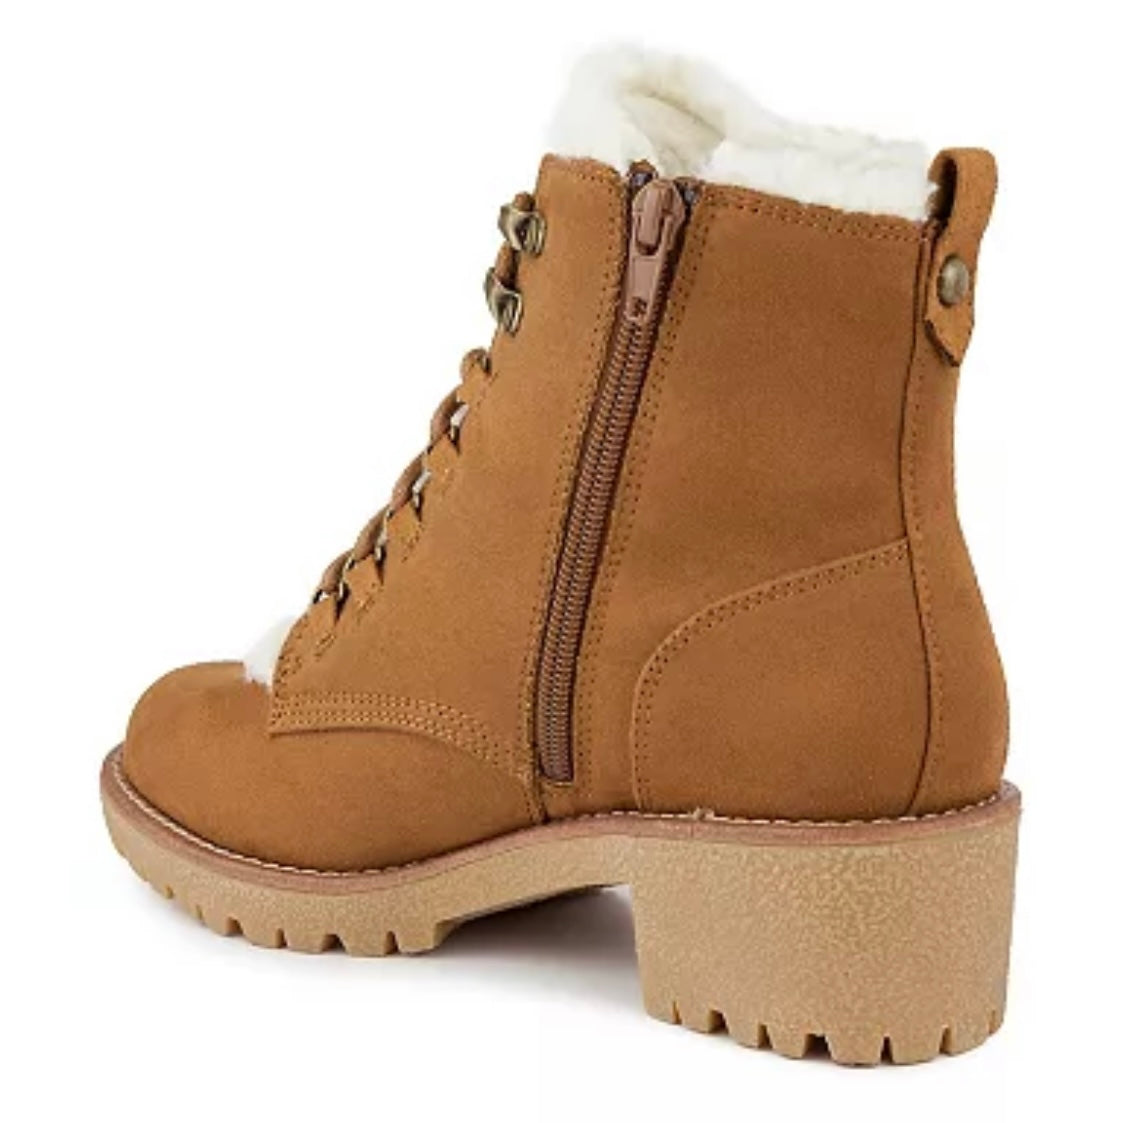 Quizzer Suede Cognac Size 11M Lace Up Round Toe Women's Winter Boots